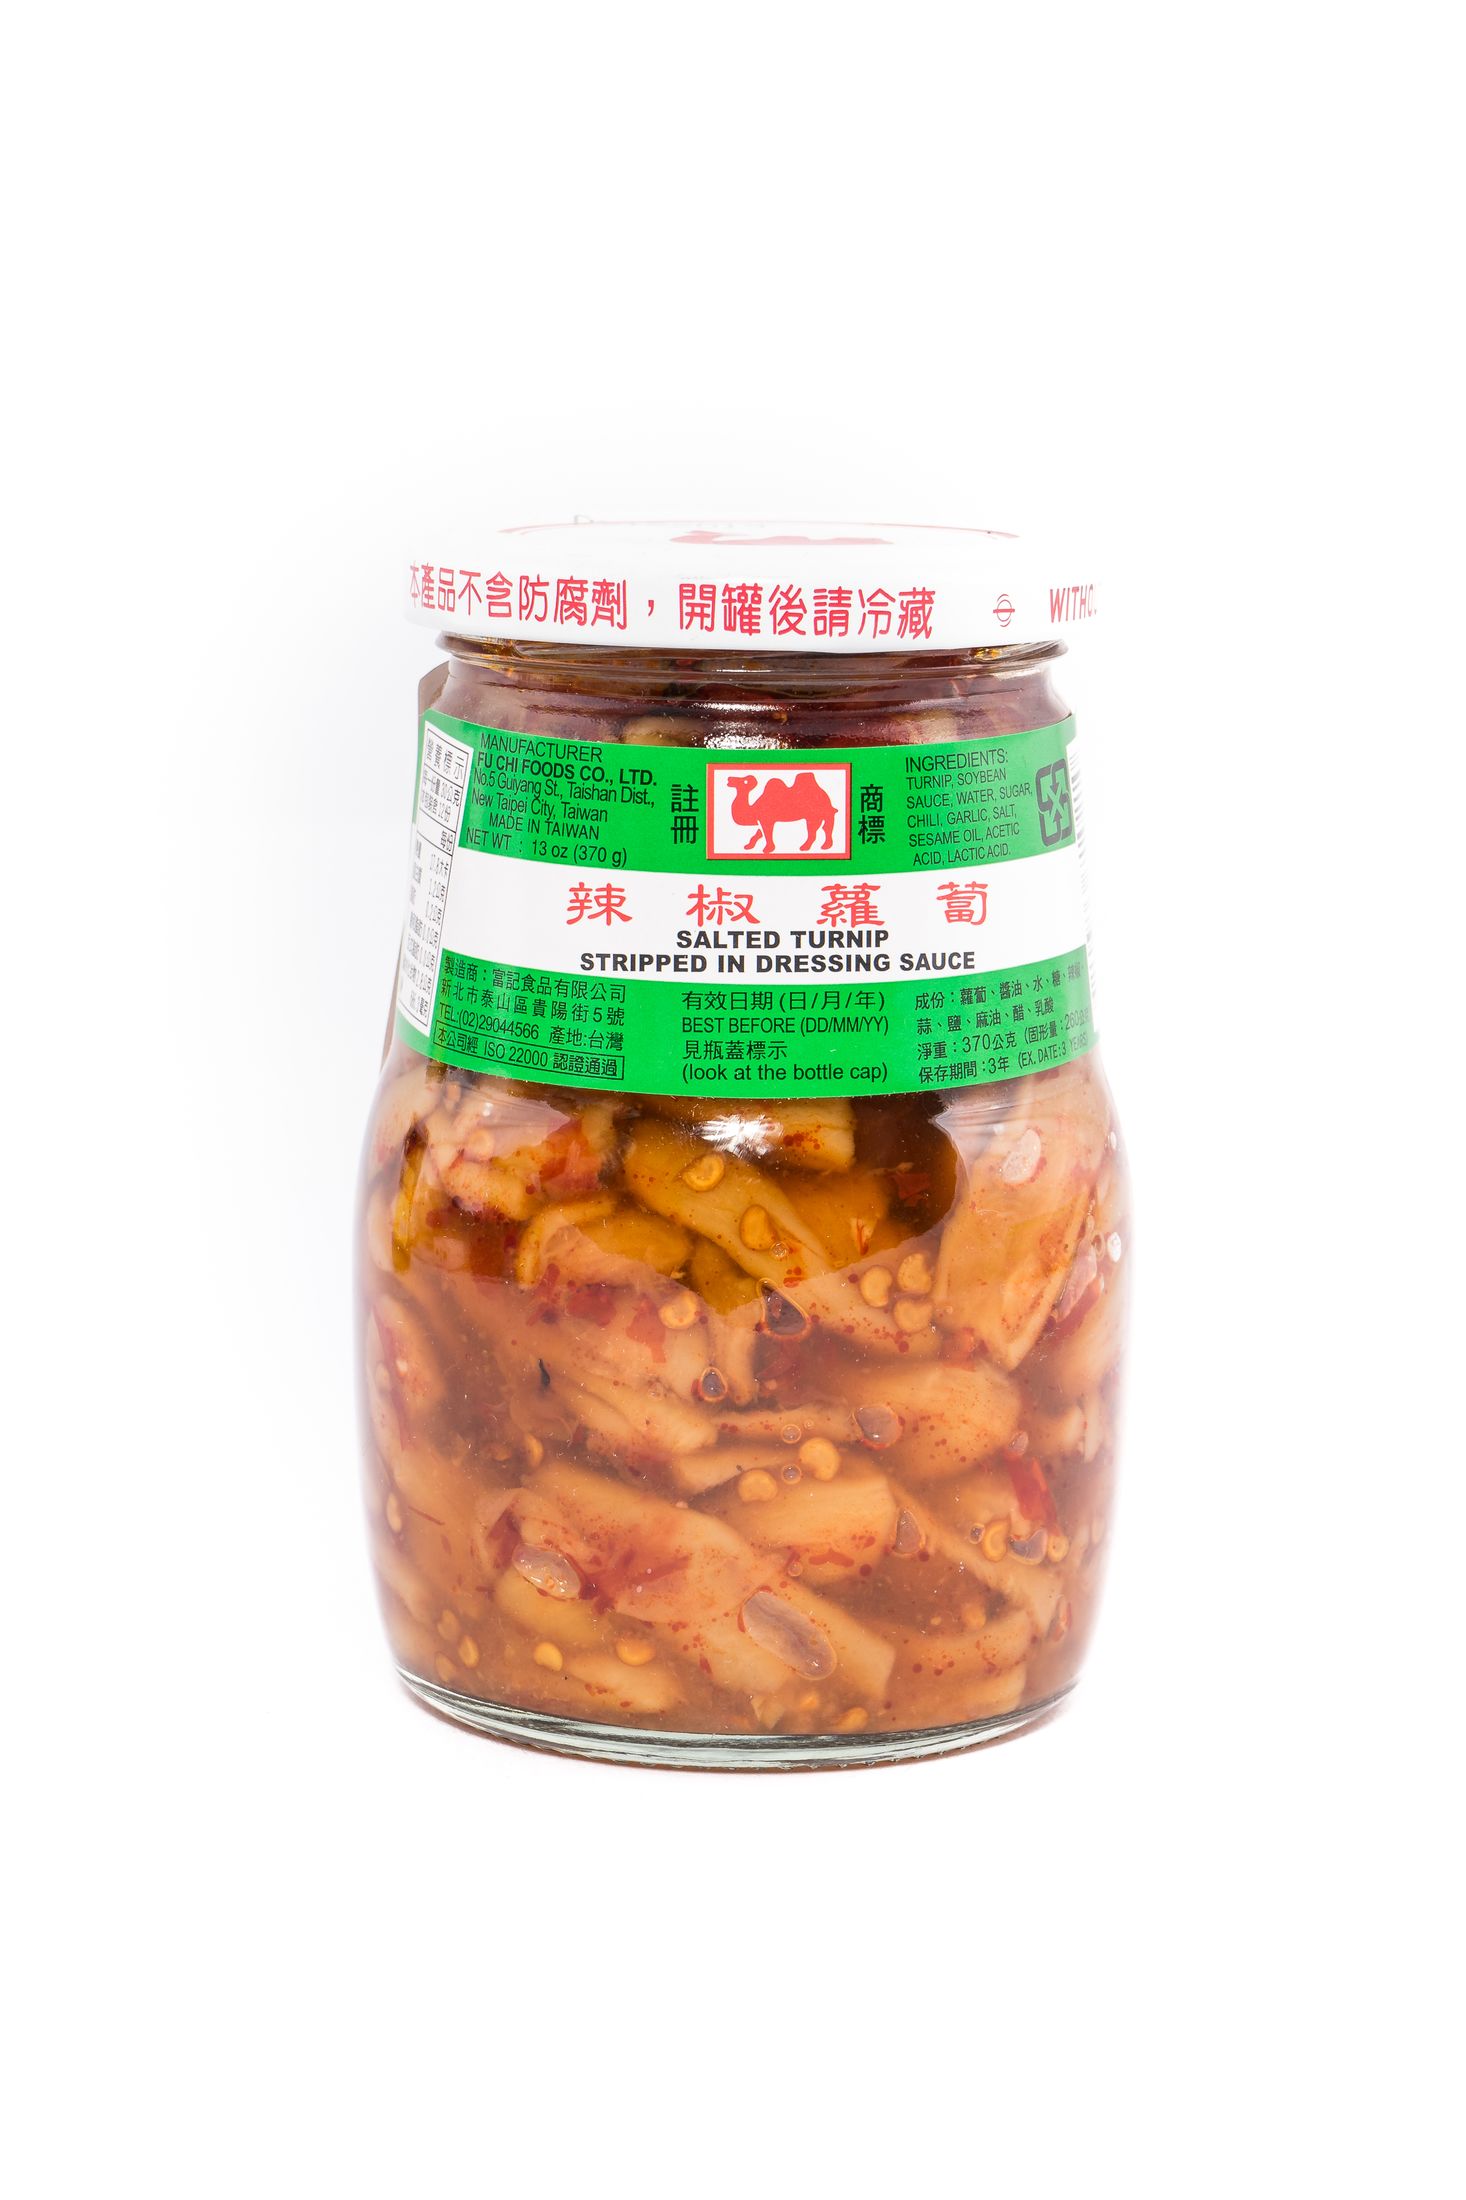 Ji Xiang Ju Gezouten raap reepjes in chili olie